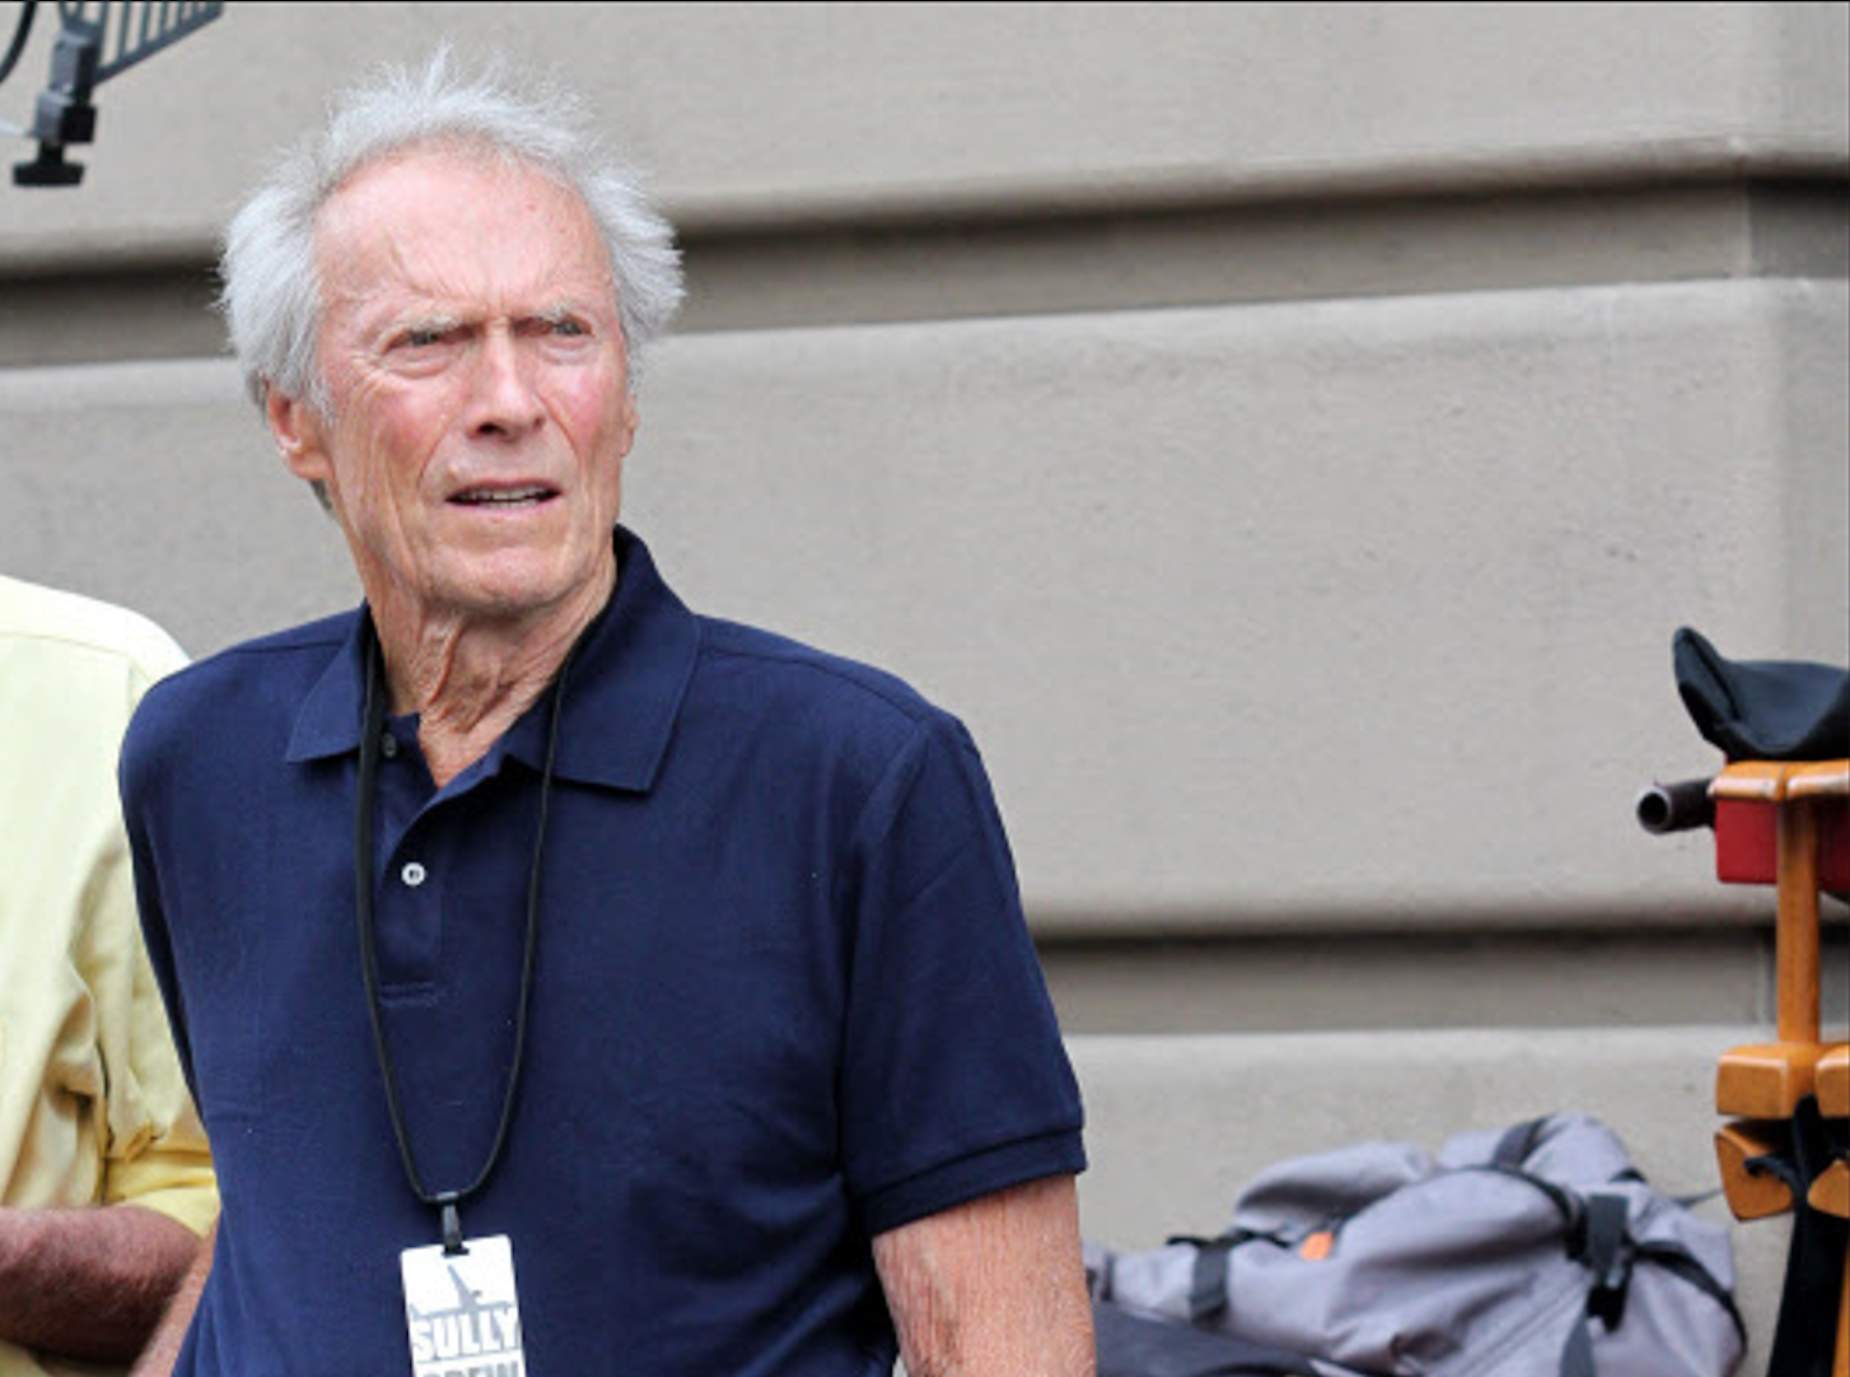 Colpidores fotos de Clint Eastwood amb 94 anys, barba blanca, encongit i delicat